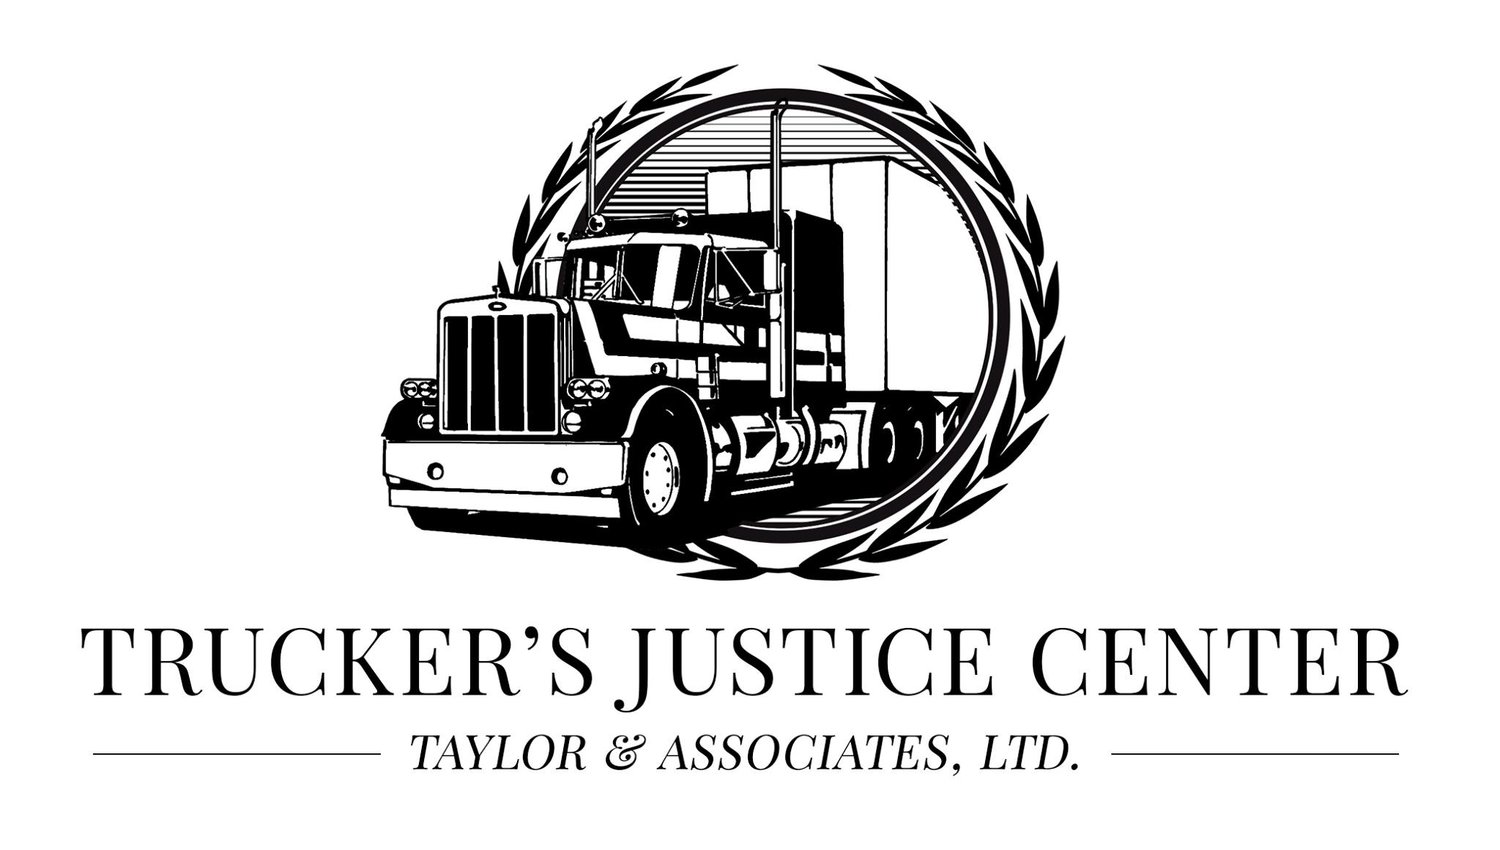 www.truckersjusticecenter.com